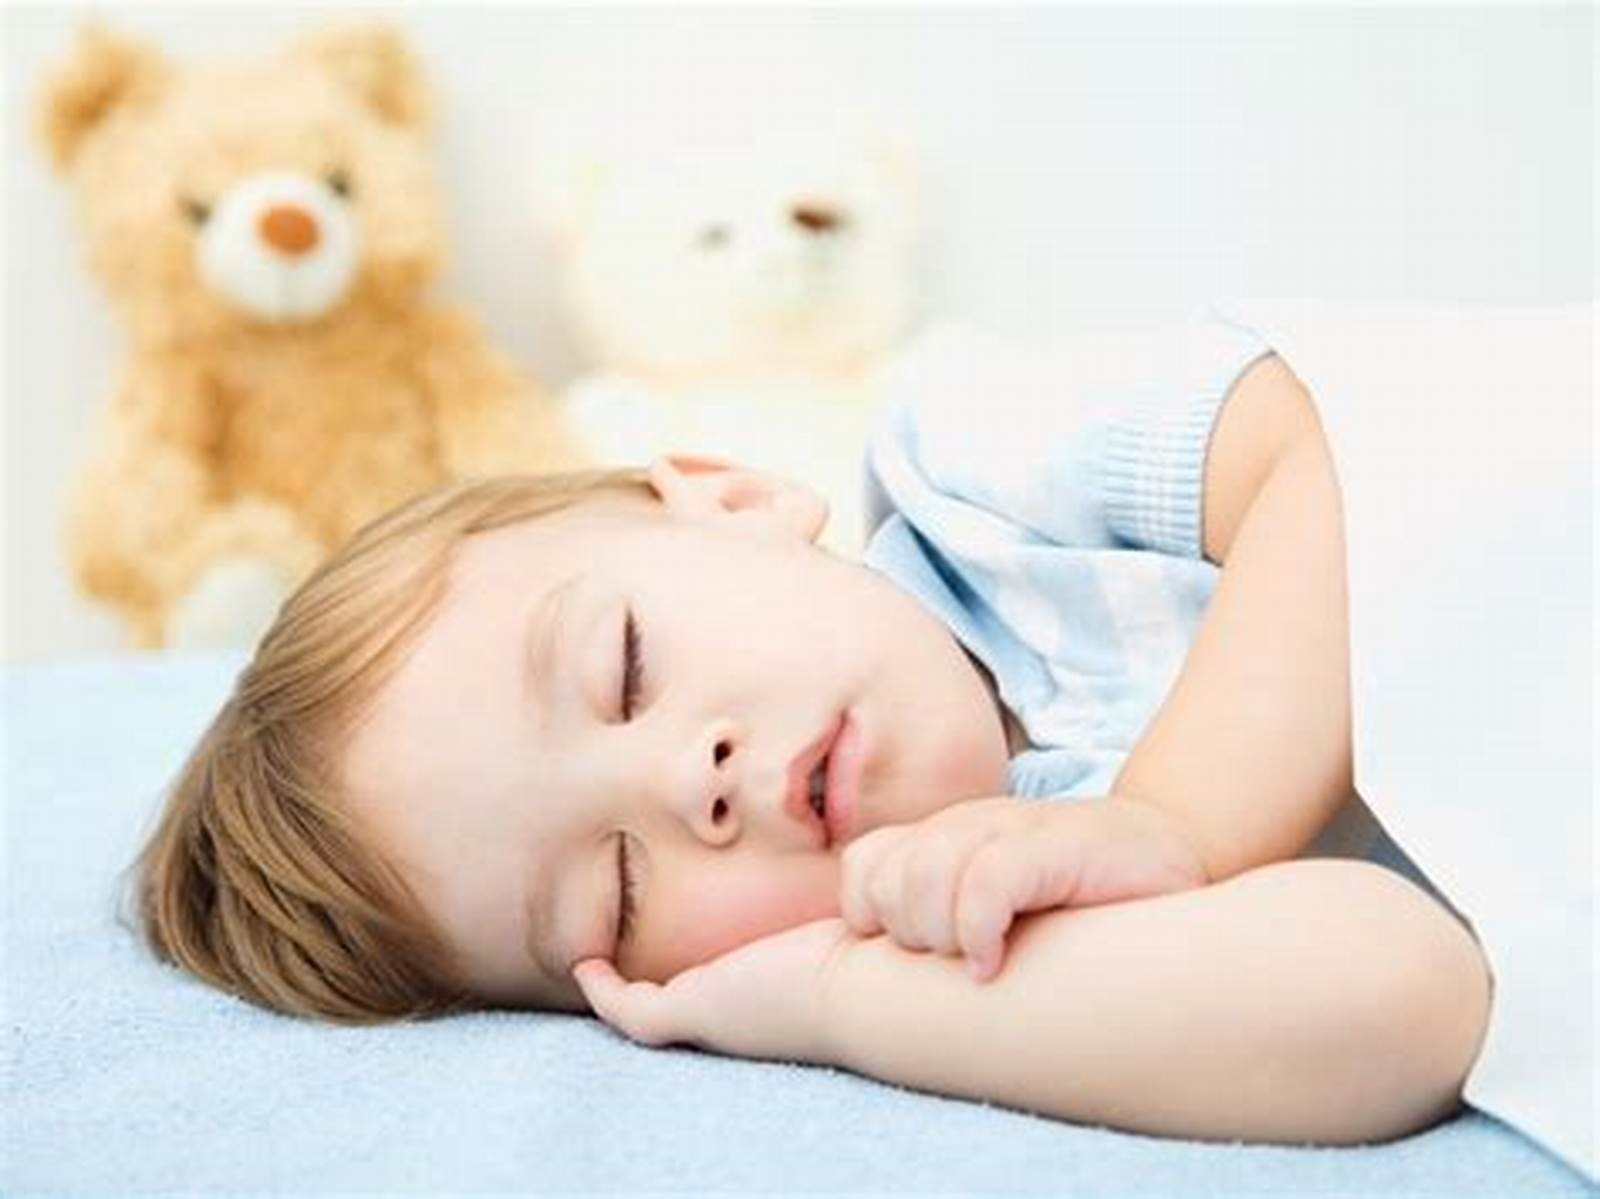 壁纸 : 宝宝, 粉, 人, 皮肤, 睡觉, 儿童, 肖像摄影, 产品, 幼儿, 睡前, 婴儿 1680x1050 - sergiucoj ...